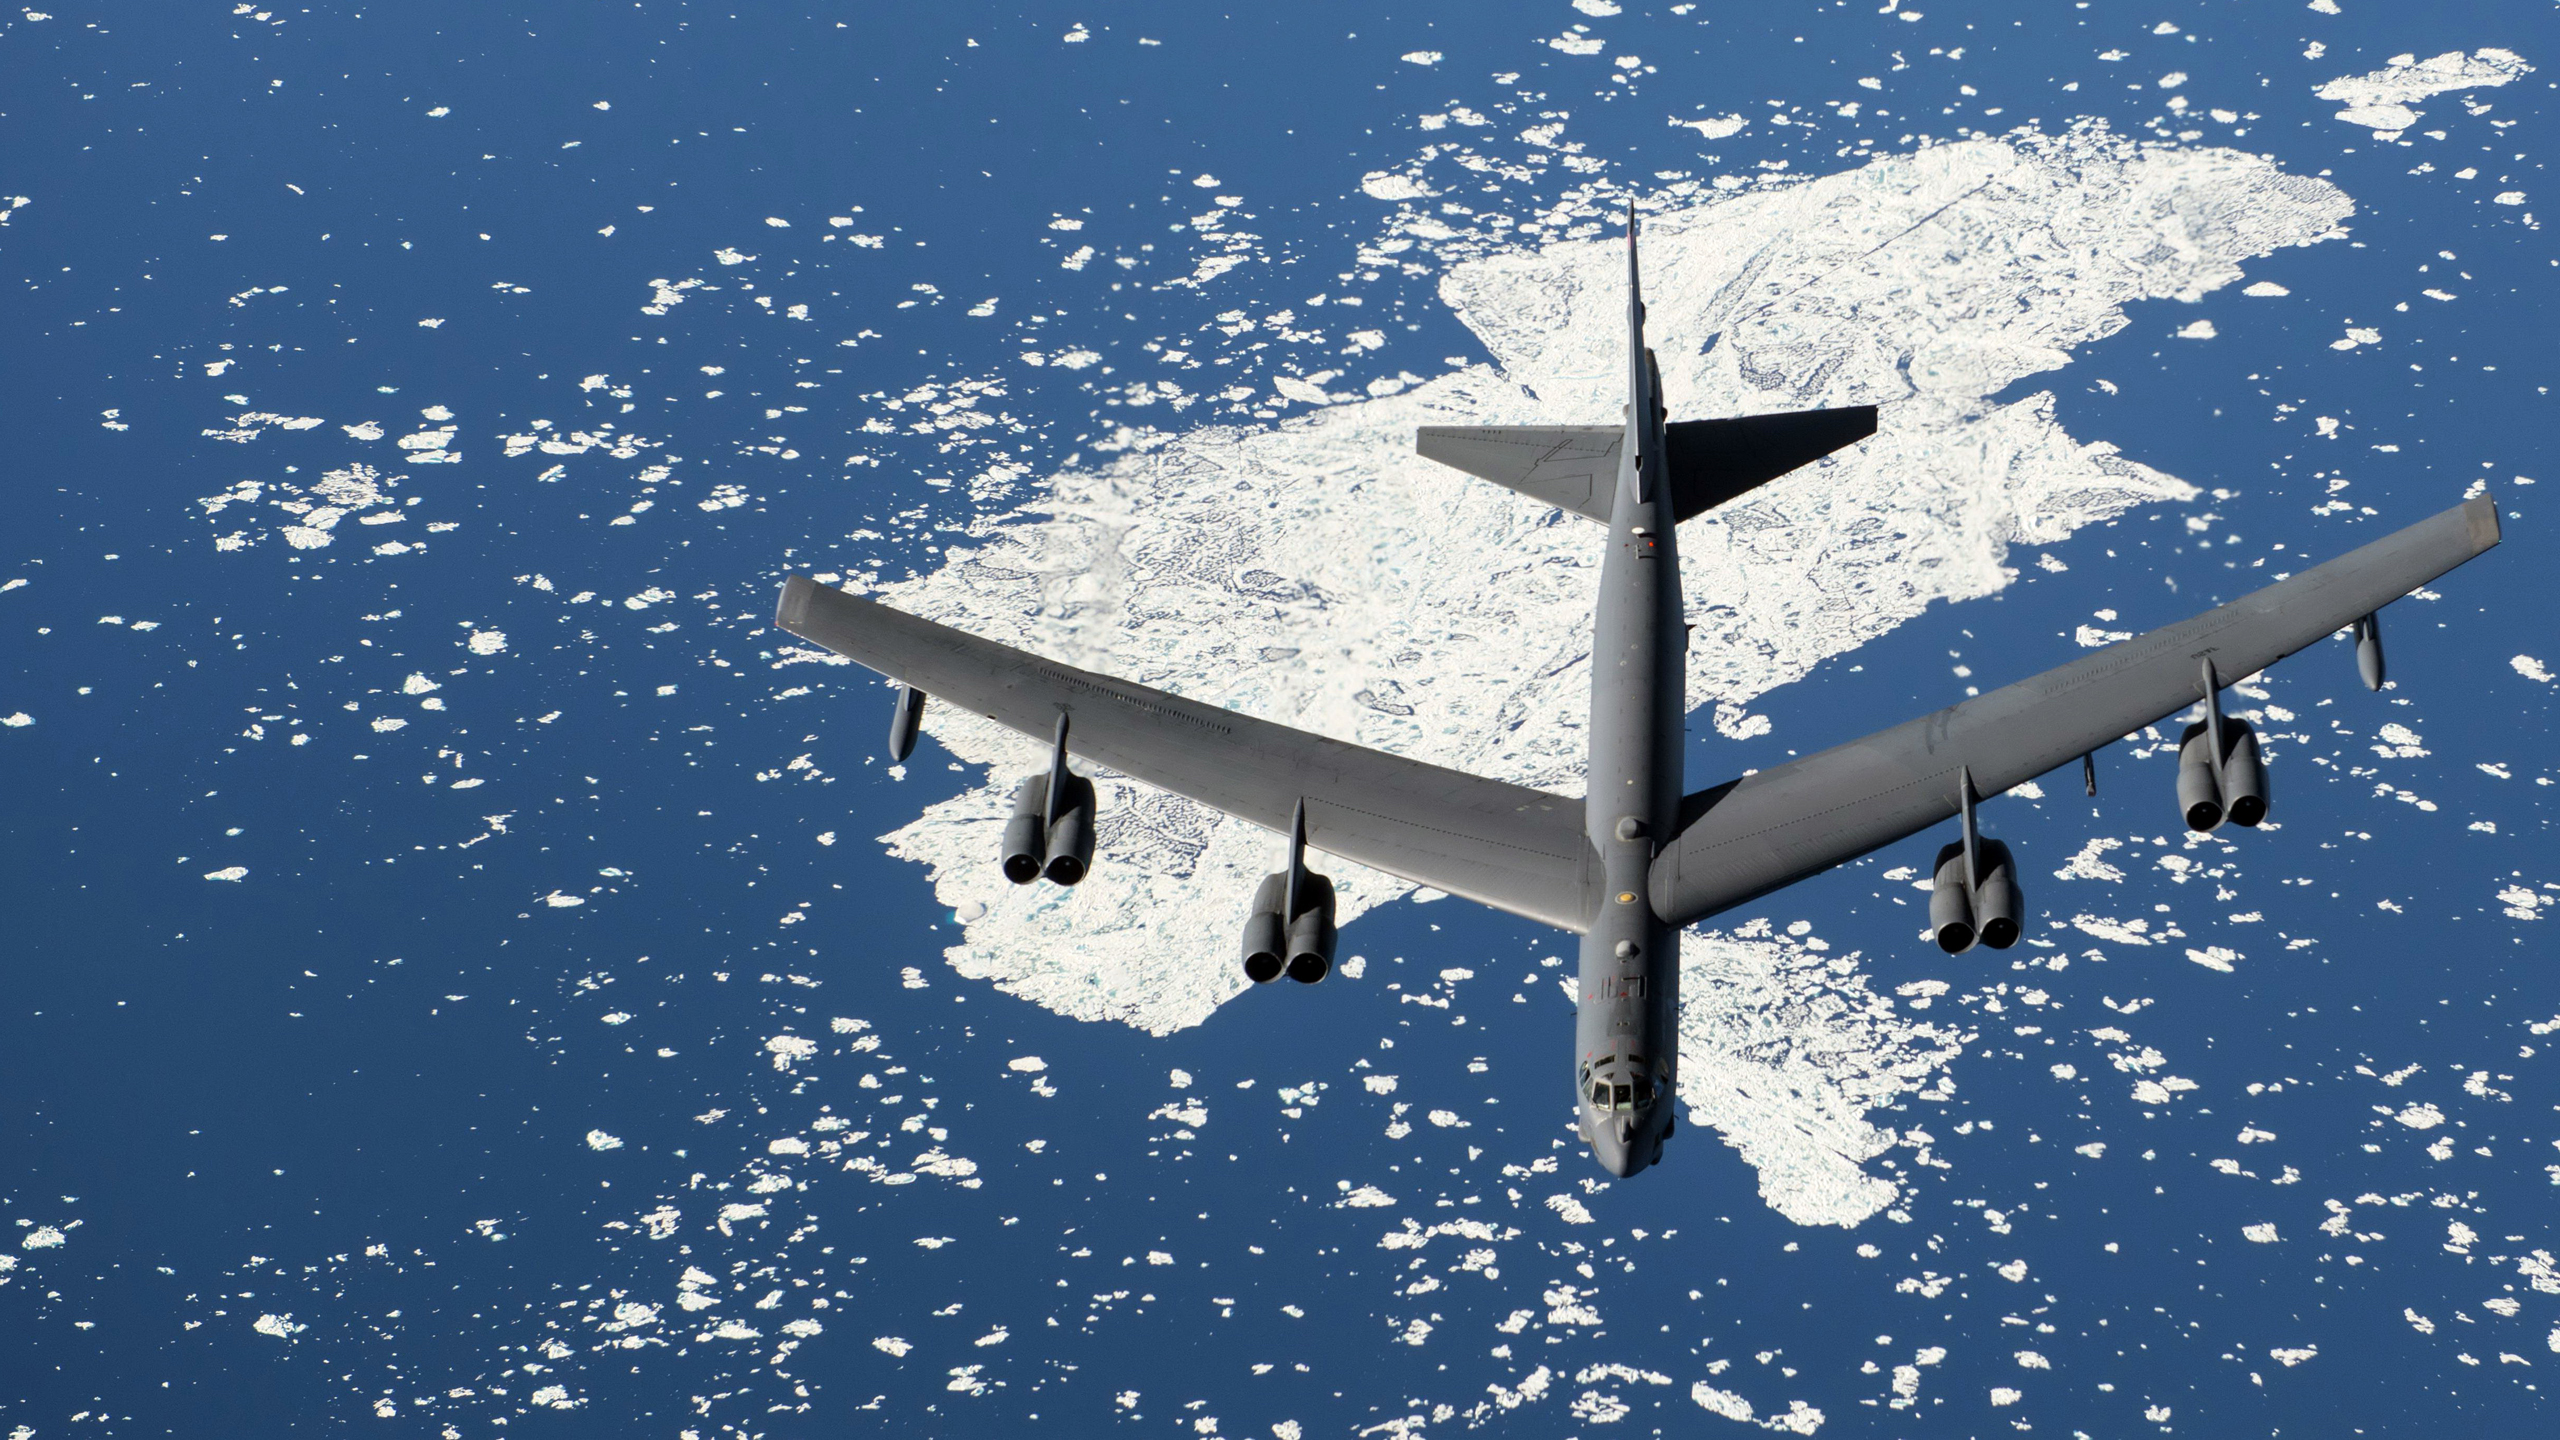 B-52.jpg